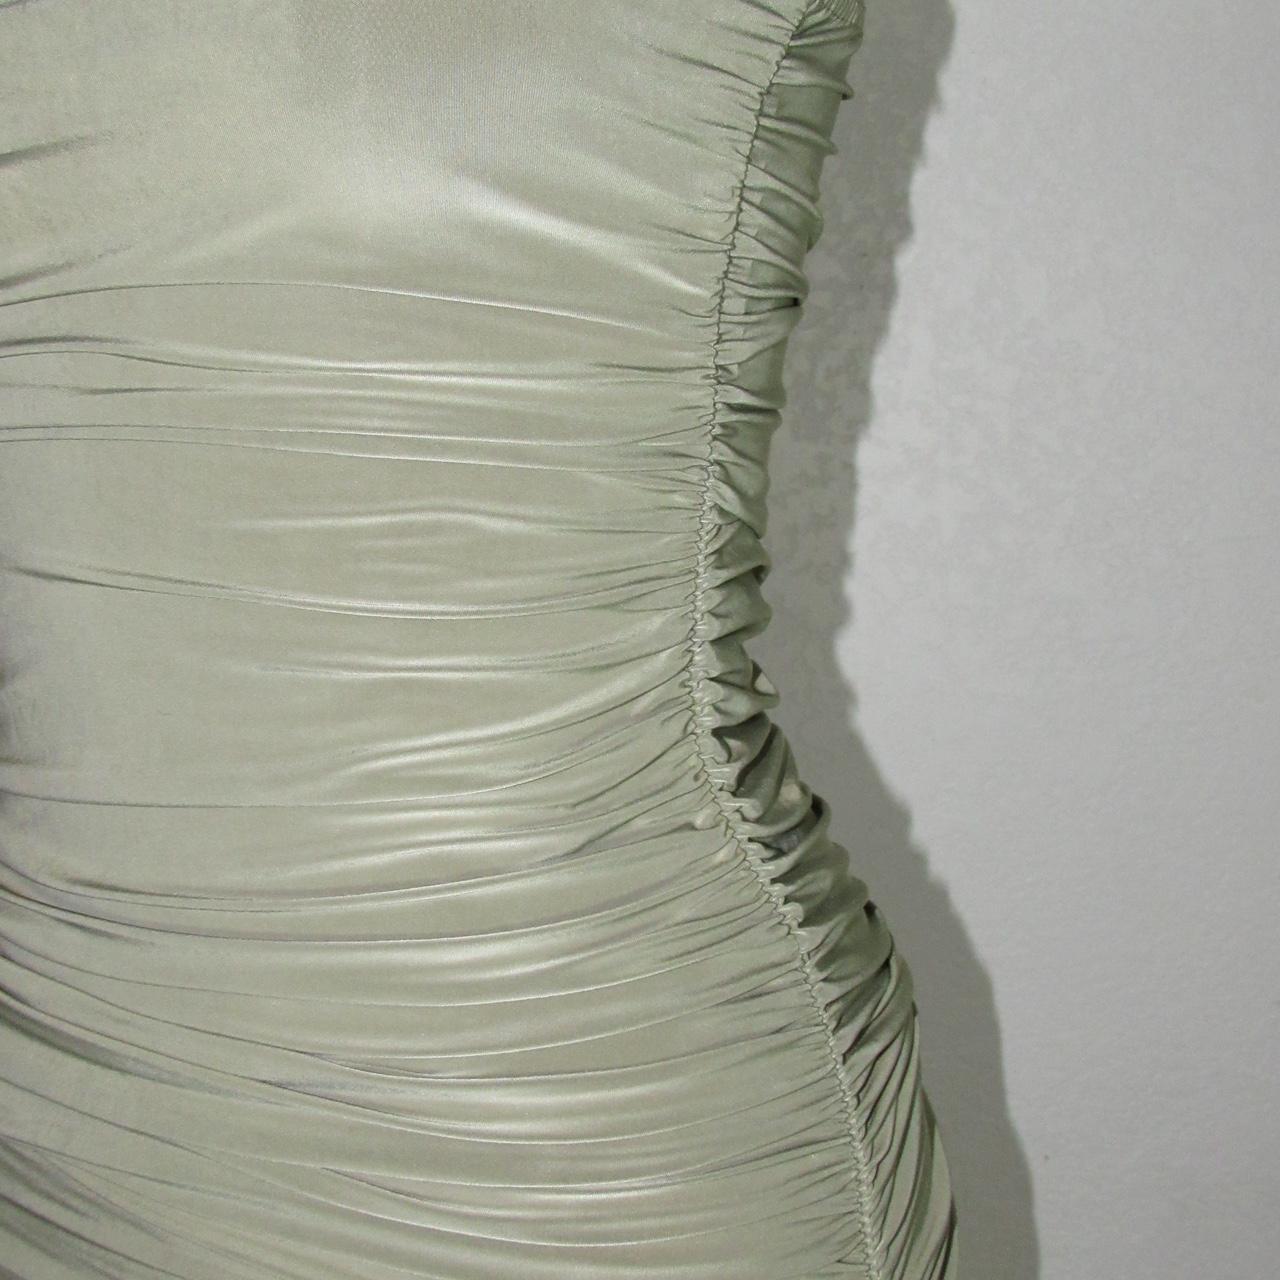 Femme Luxe Women's Green and Khaki Dress (5)